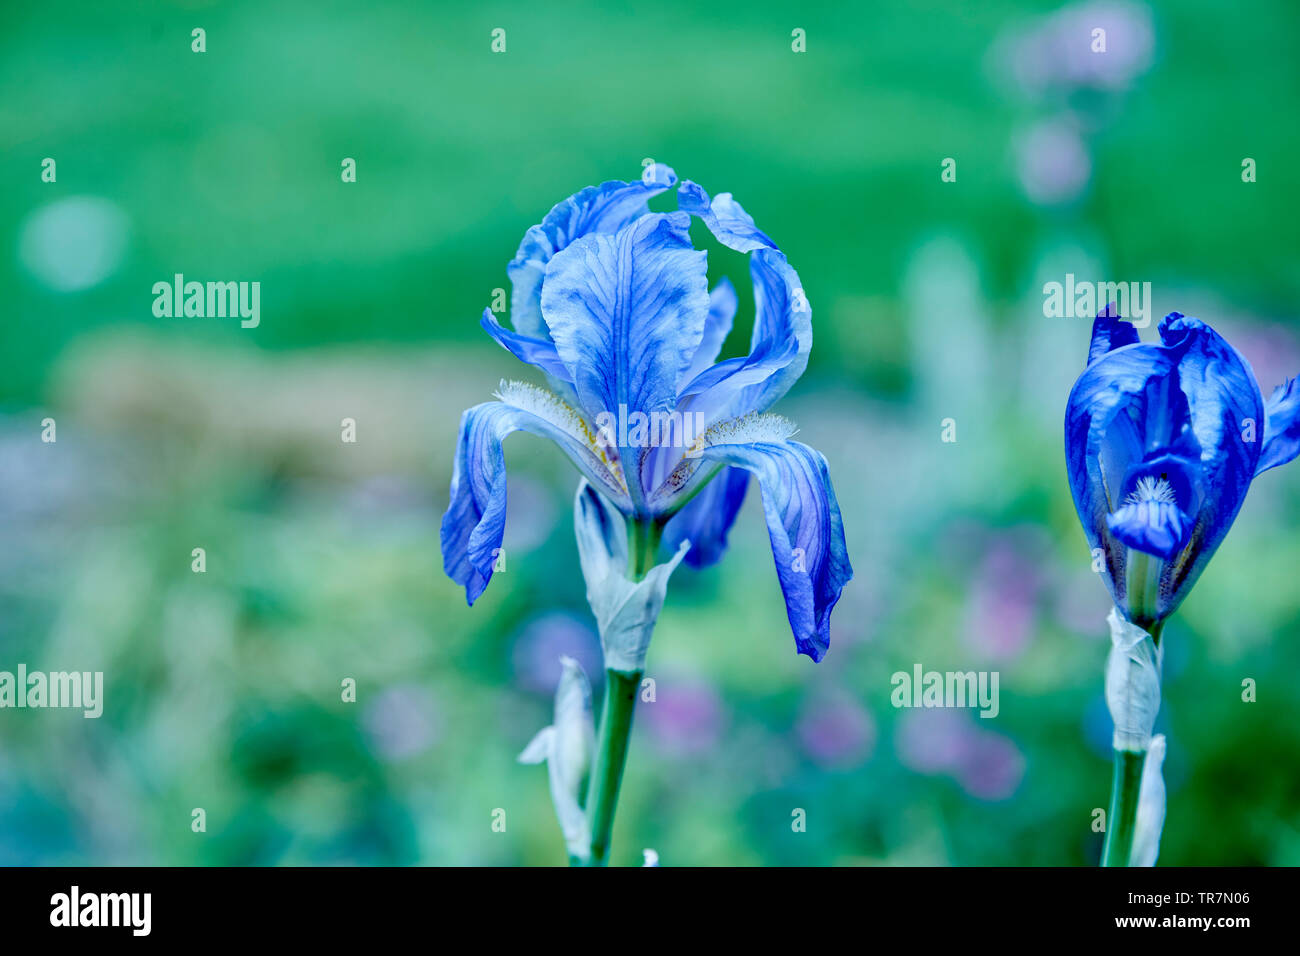 A closeup of a flower of a blue iris in a garden, Stock Photo